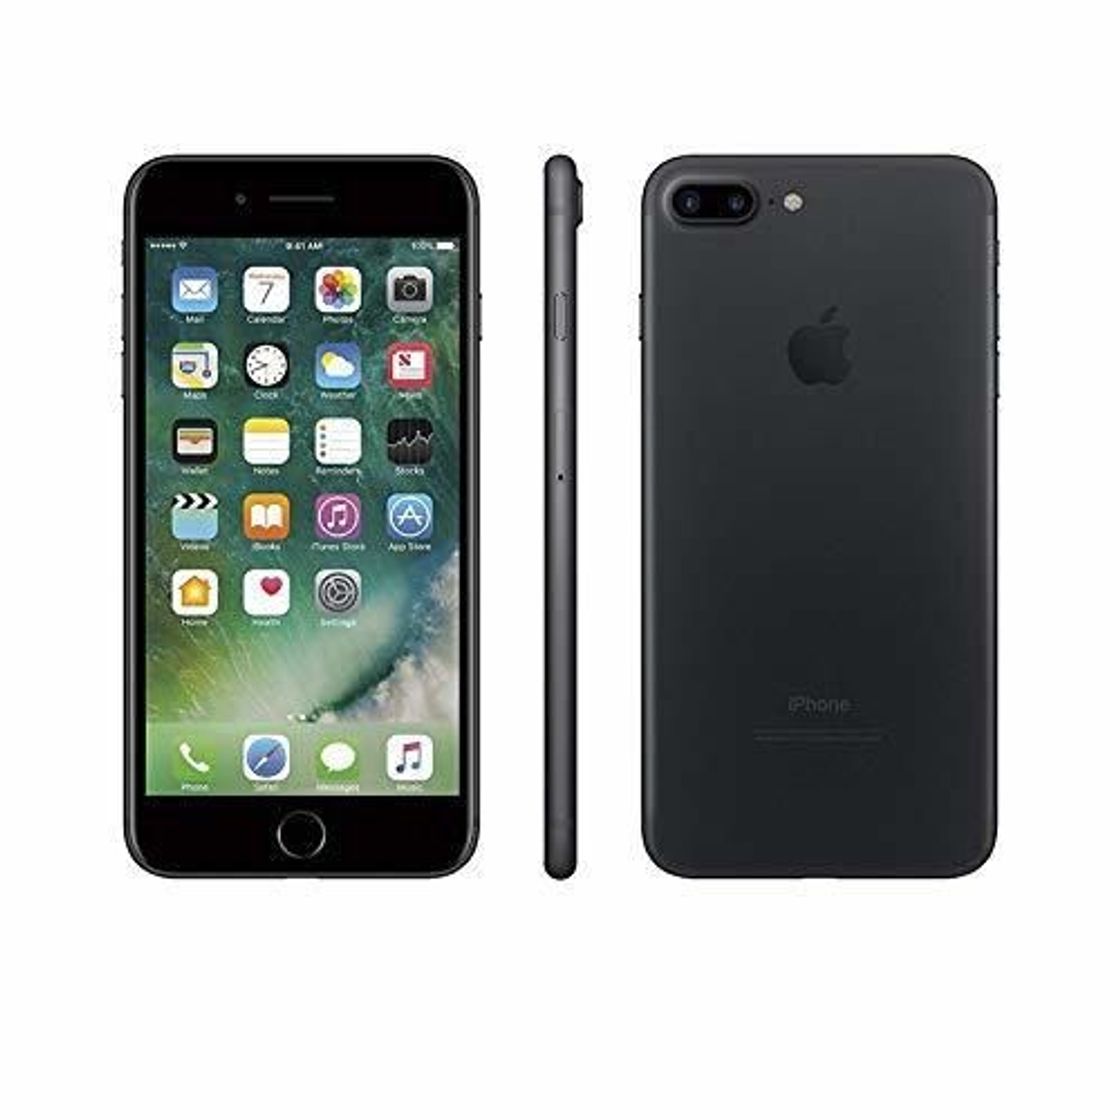 Apple iPhone 7 Plus 128GB Negro Mate